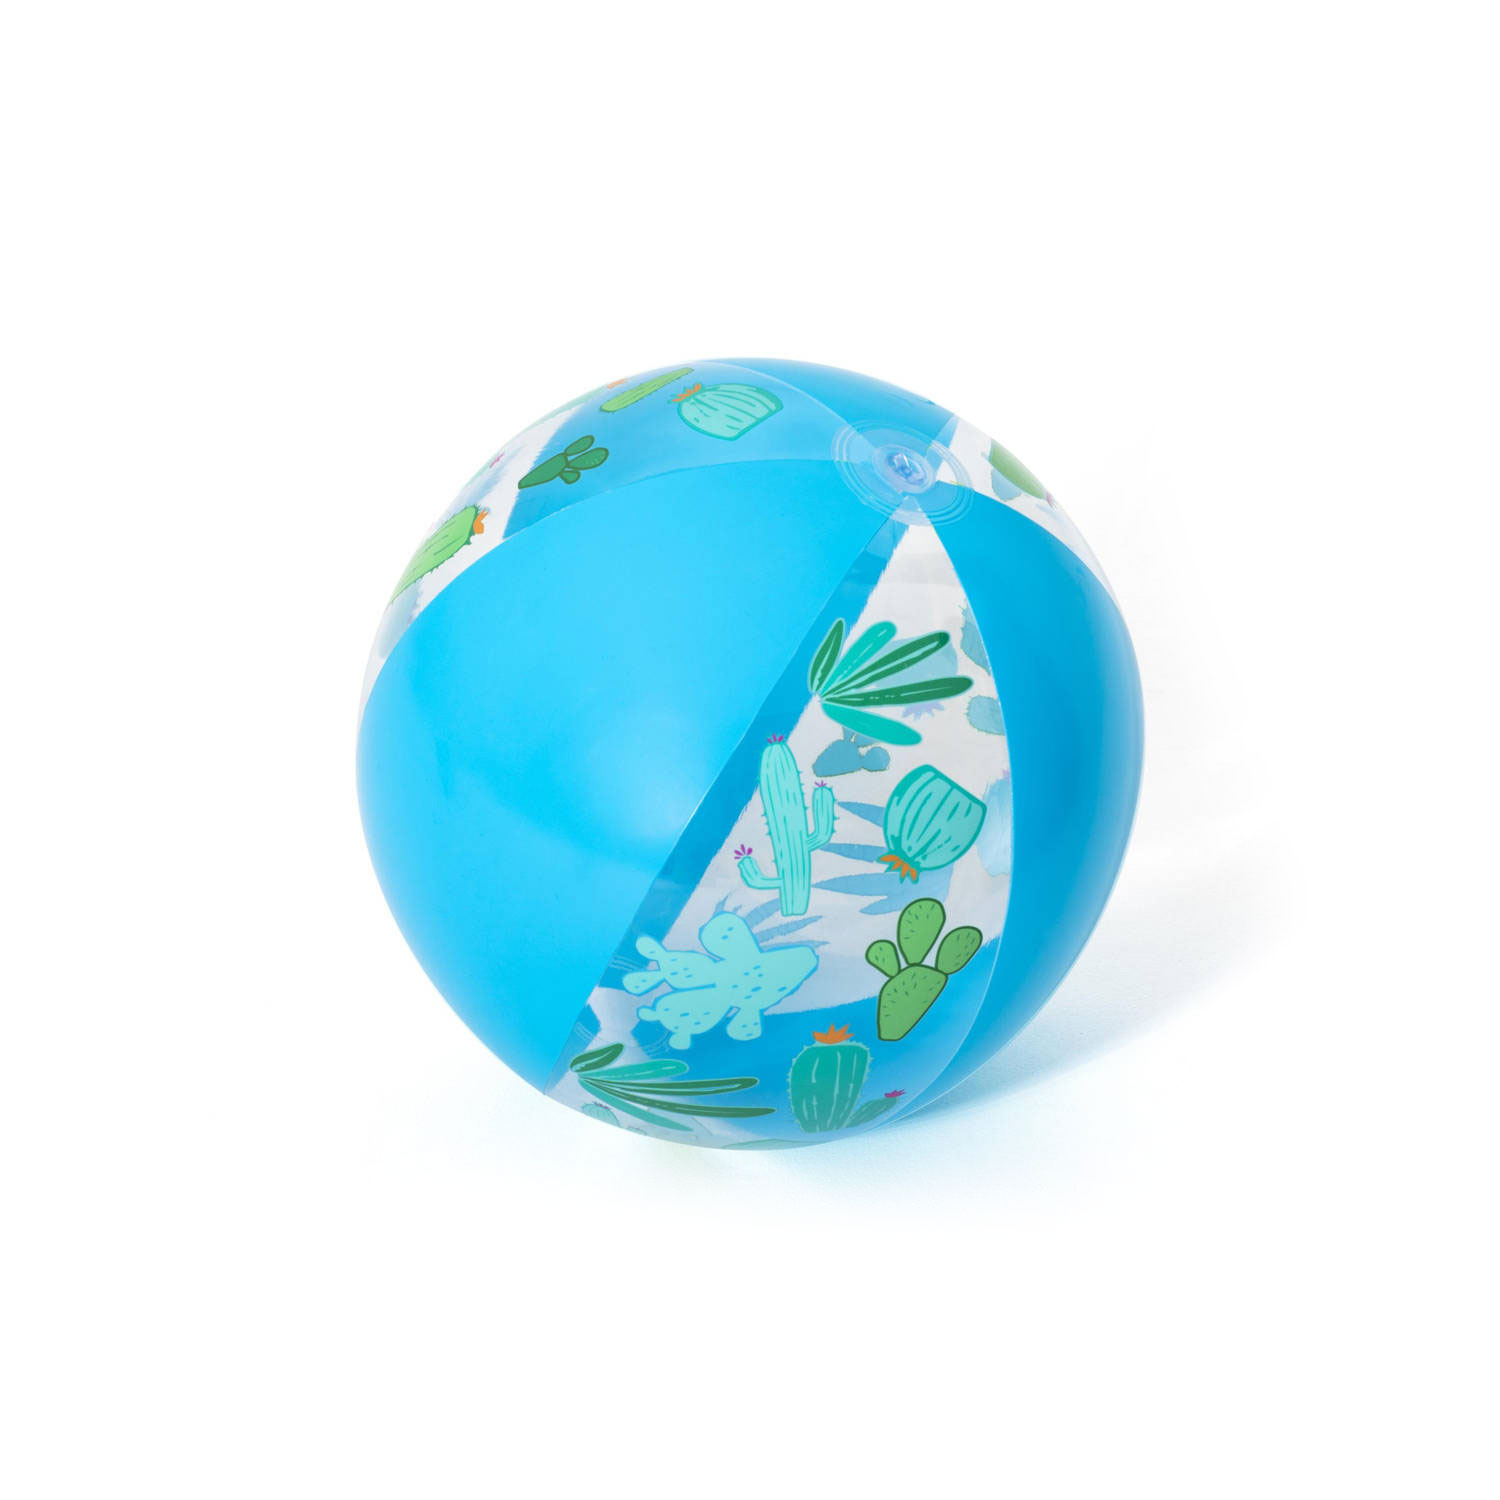 51cm. | Bestway Toys Beach Thimble Ball,